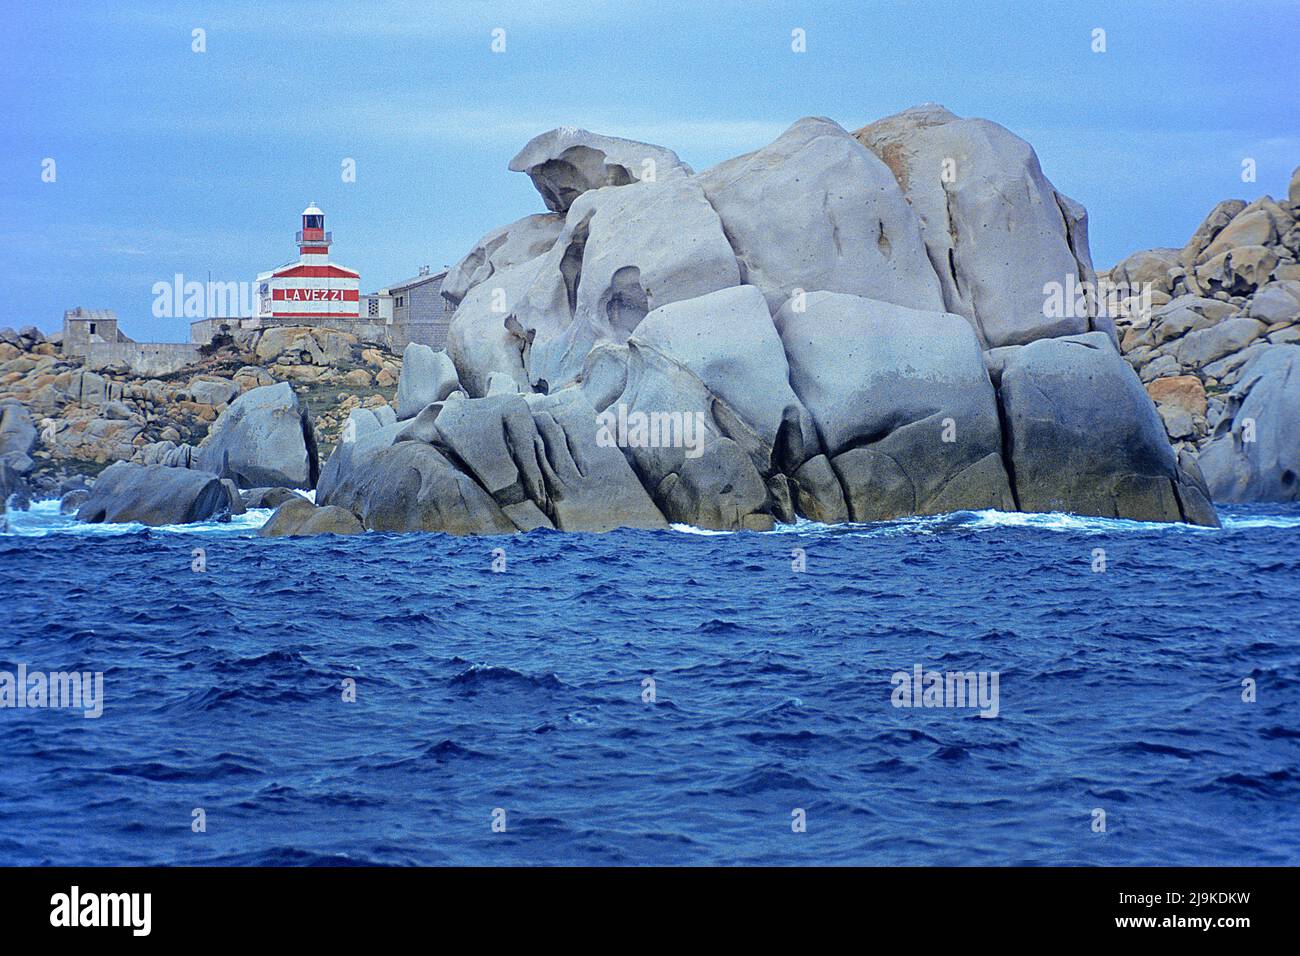 Leuchtturm auf den Lavezzi Inseln, Inselgruppe zwischen Korsika und Sardinien, die Inseln stehen unter Naturschutz und sind der suedlichster Punkt Fra Stock Photo